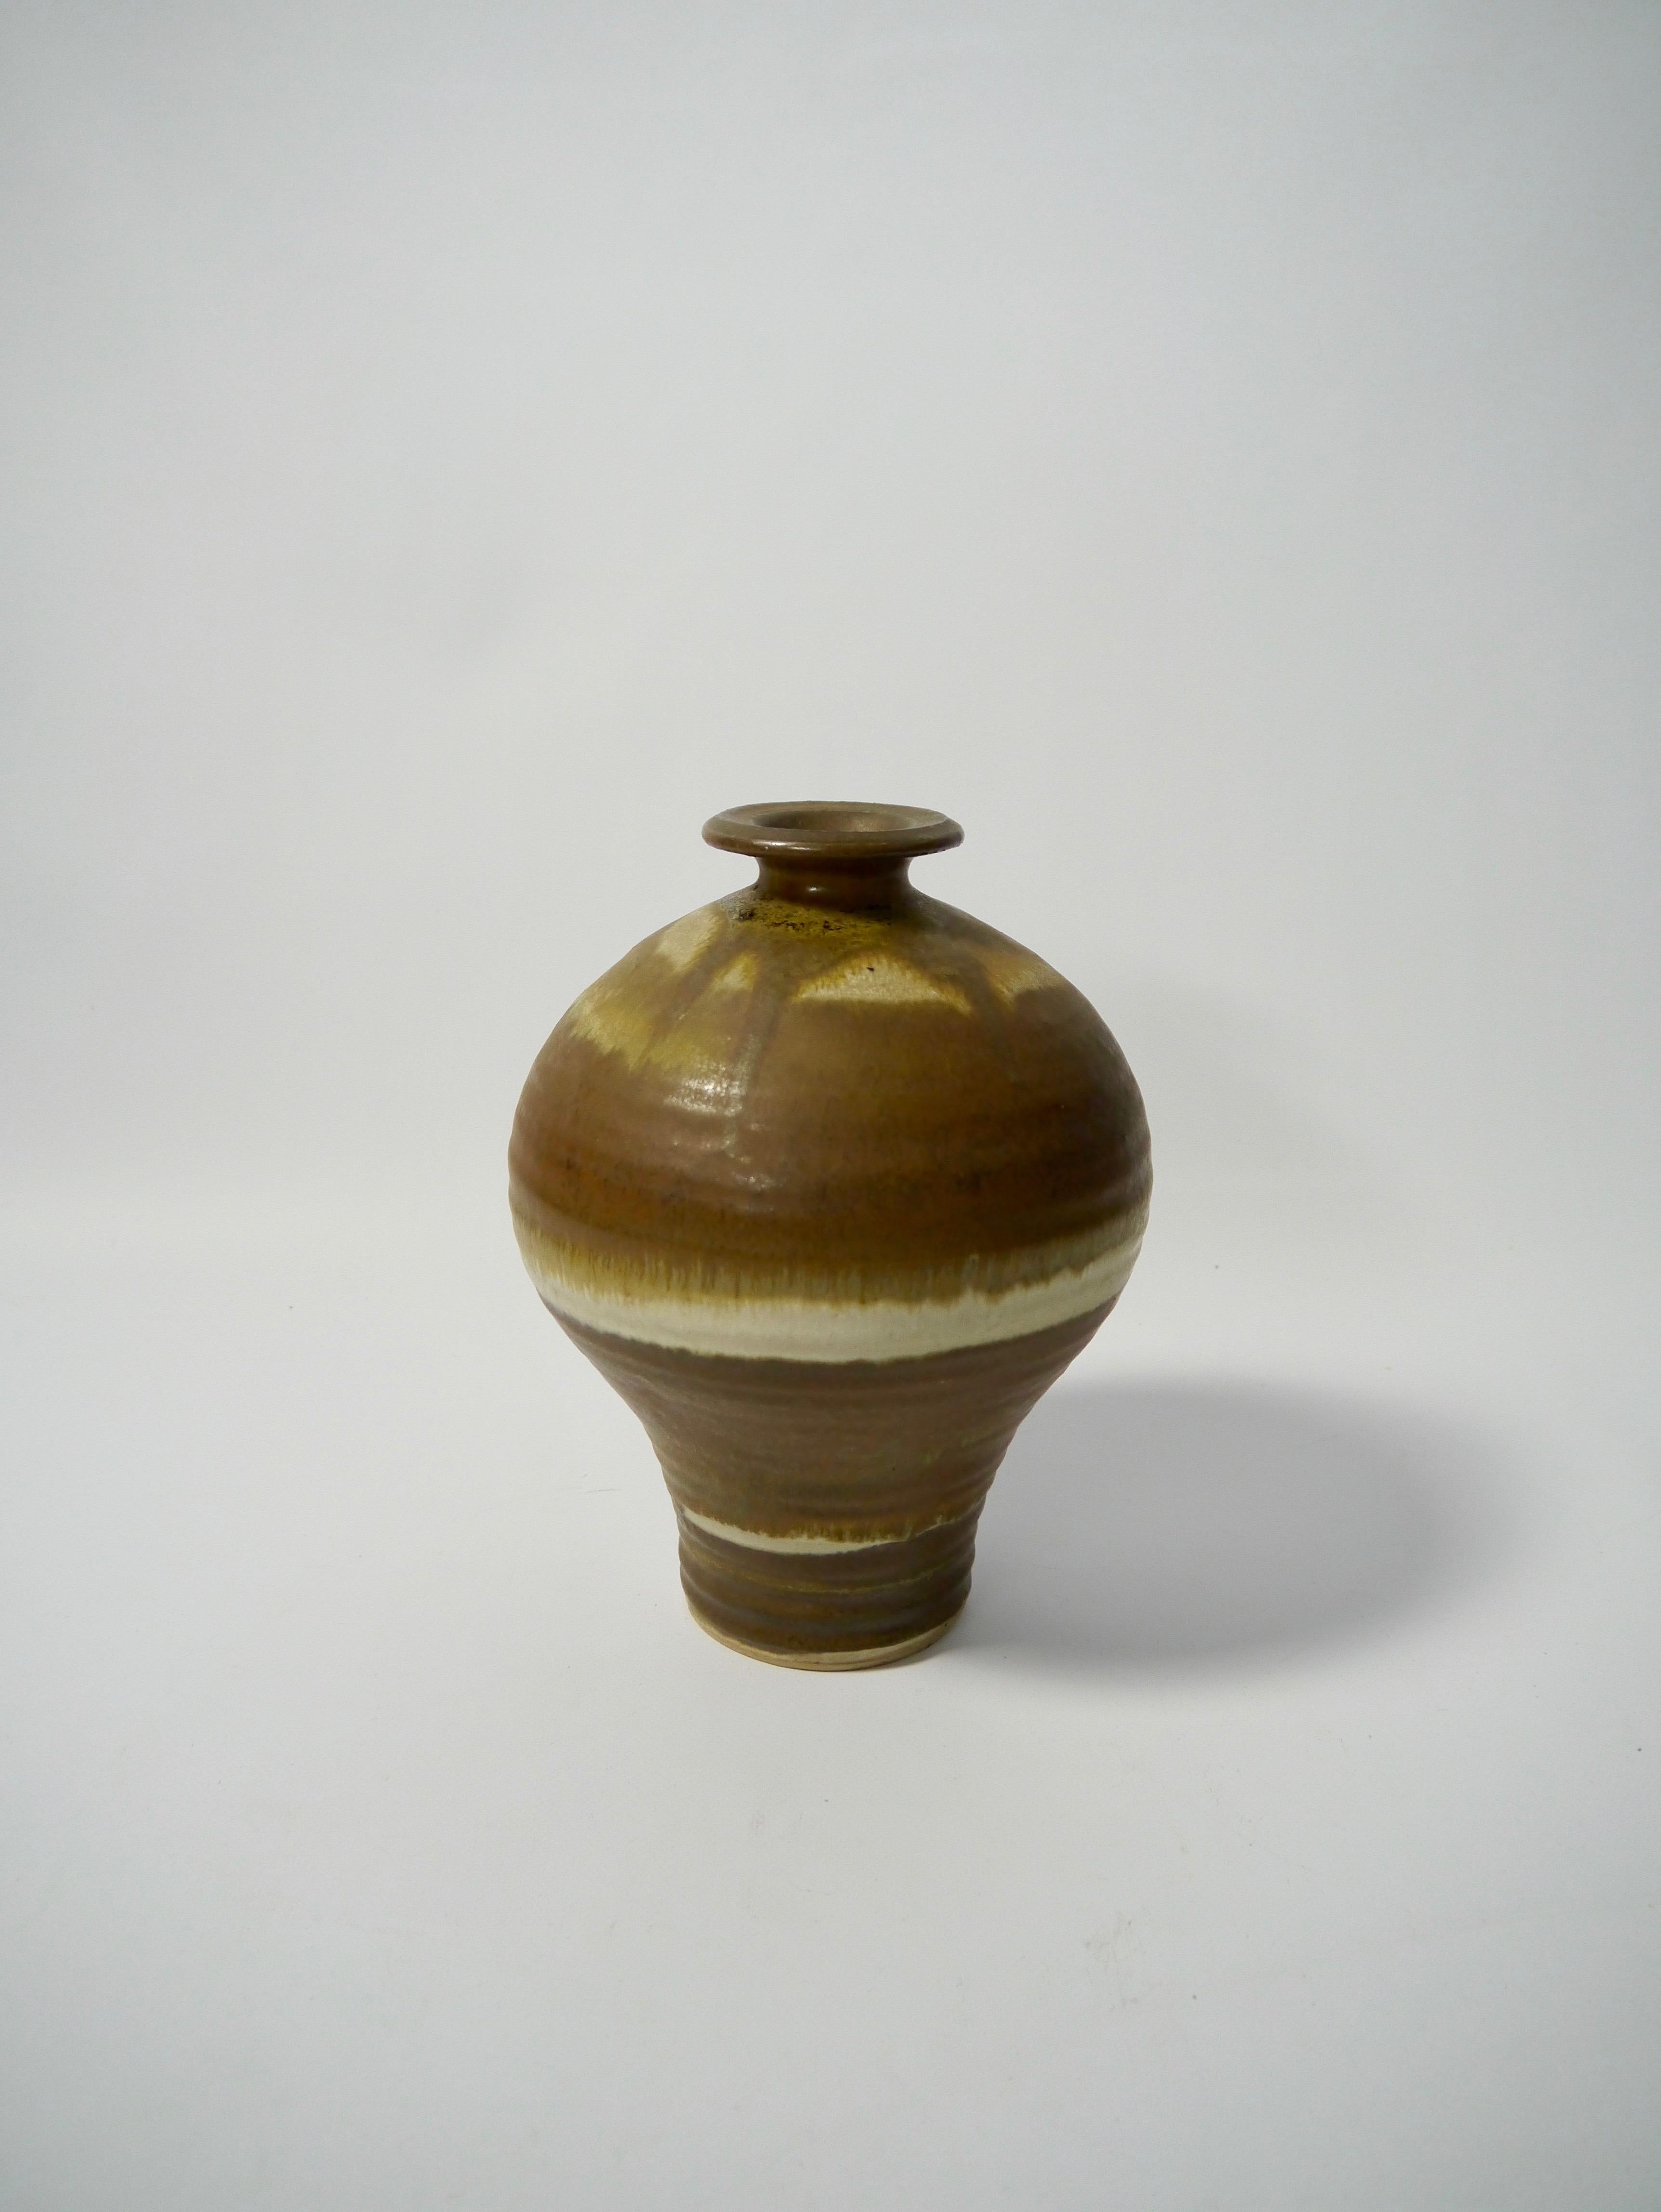 Handgedrehte Keramikvase, klassische Form, erdfarbene Wabi-Sabi-Glasur. Unbekannter Hersteller, siehe Stempel am Sockel.